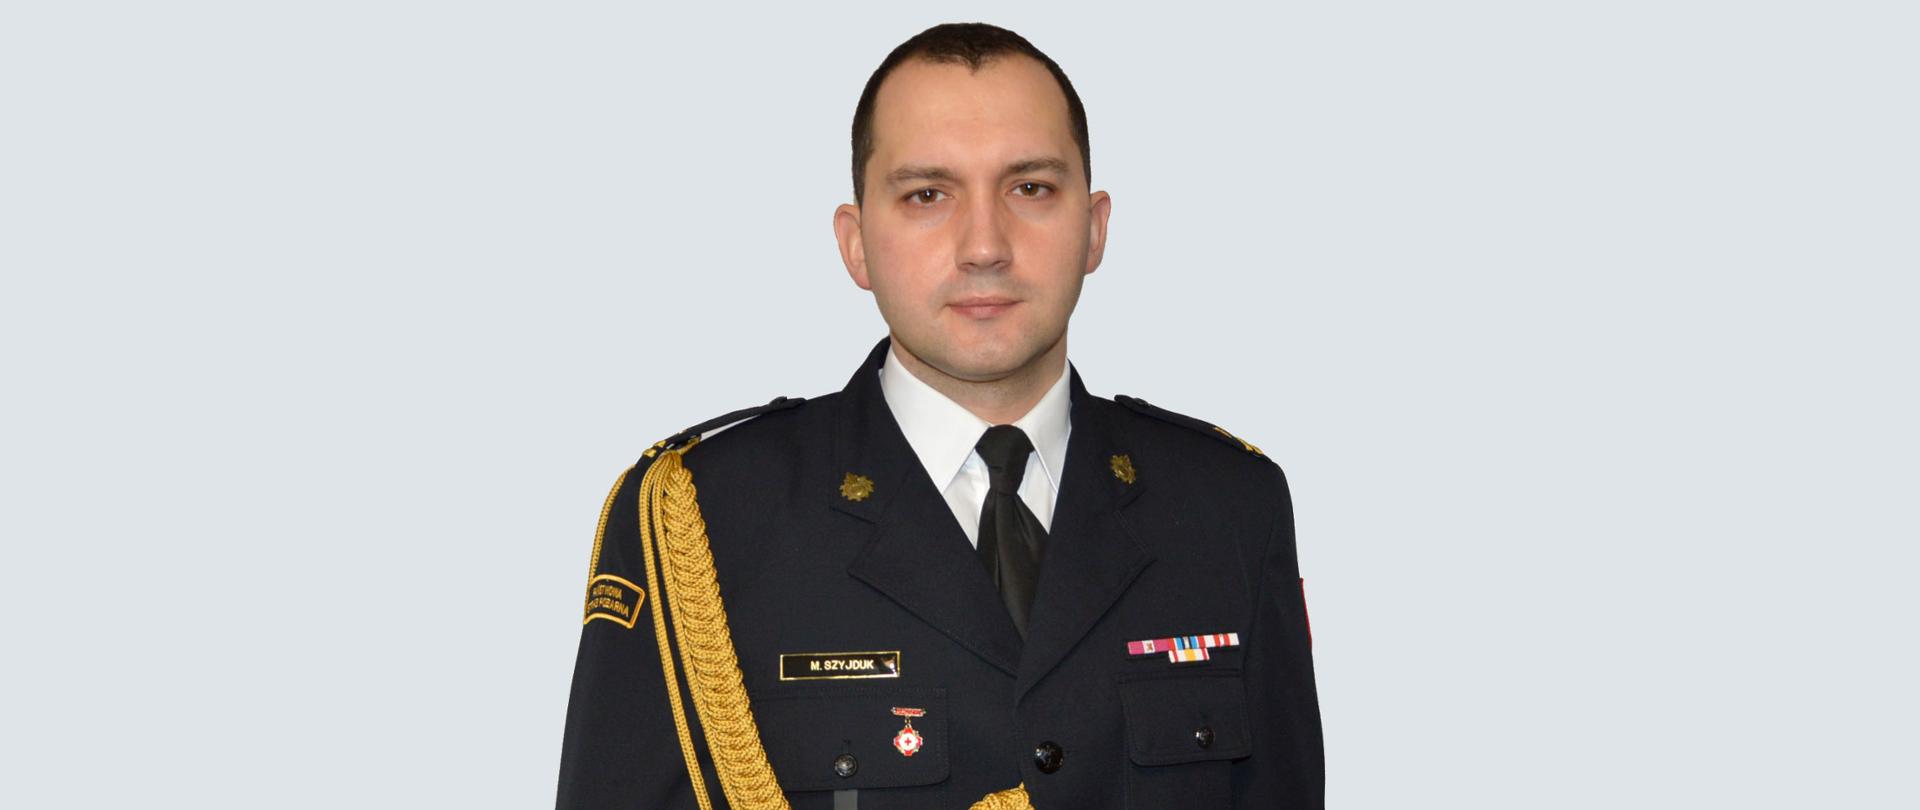 Zdjęcie przedstawia zastępce Komendanta Powiatowego PSP w Ustrzykach Dolnych mł. bryg. mgr inż. Marcina Szyjduka